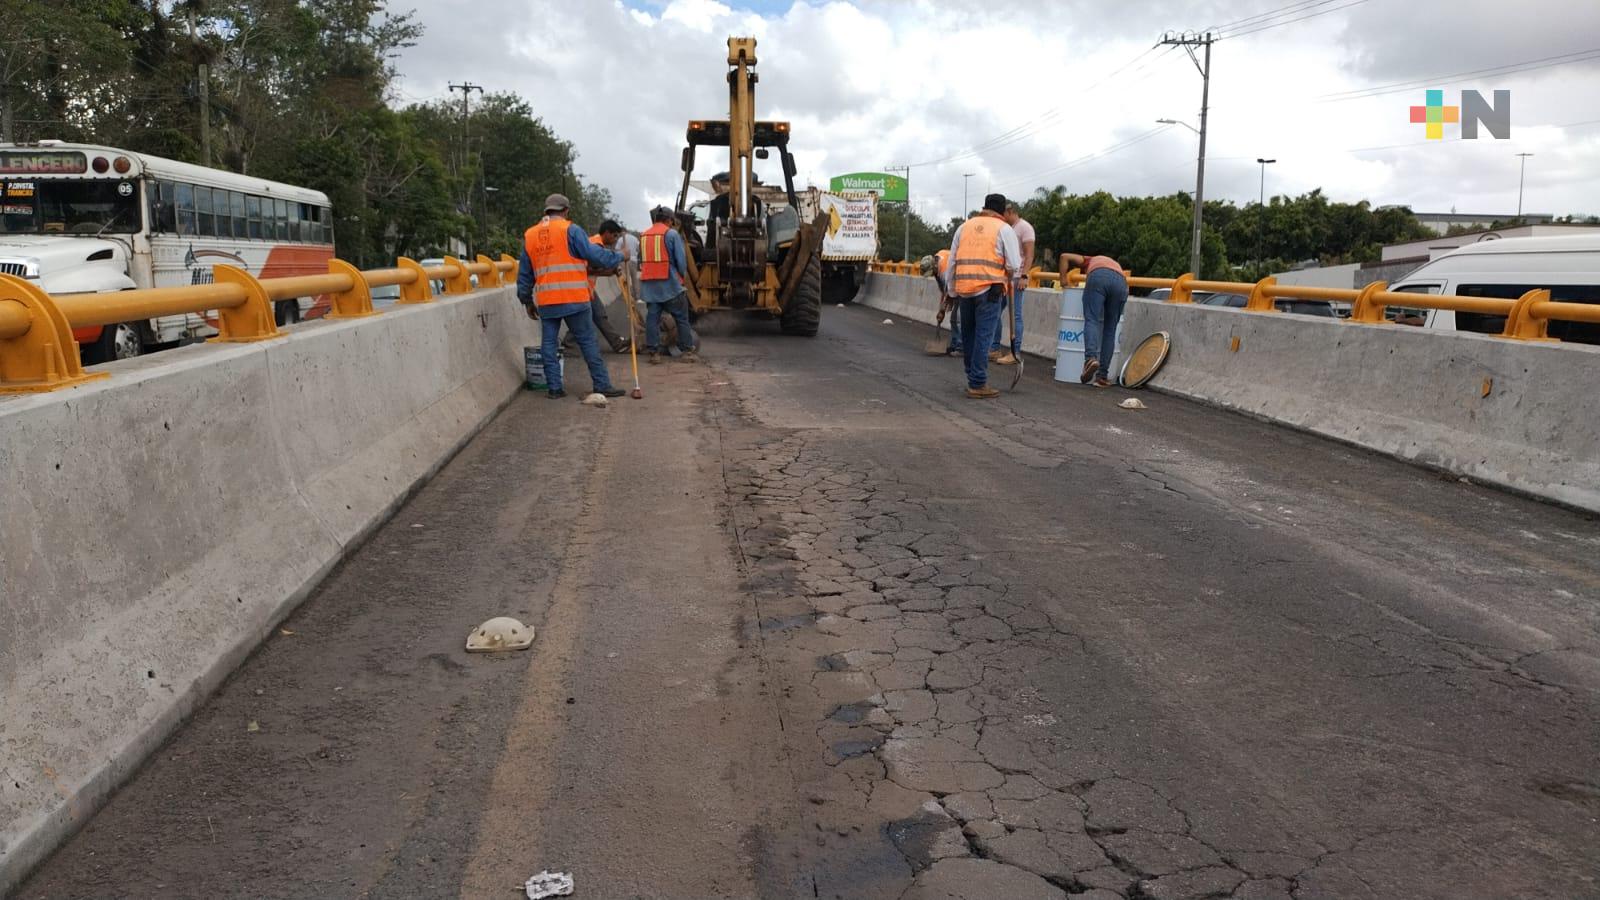 Dan mantenimiento a puente de acceso a la avenida Murillo Vidal en dirección al centro de Xalapa